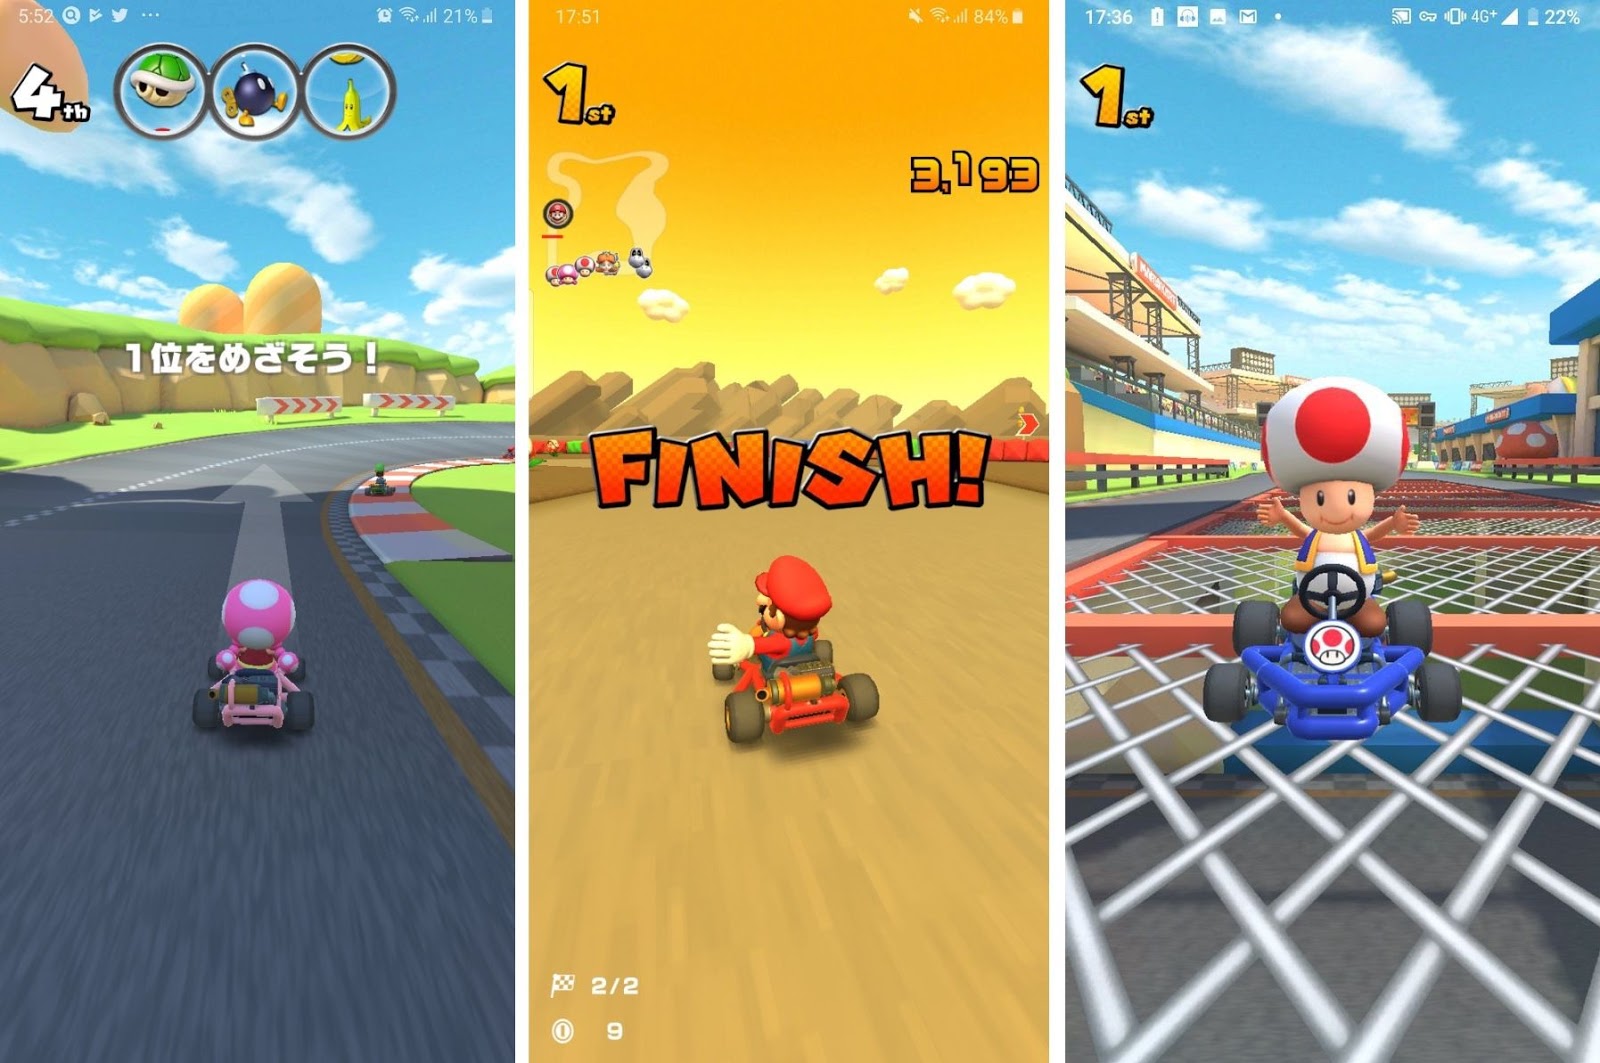 Game Mario Kart Tour promete ser mania nos smartphones - Época Negócios